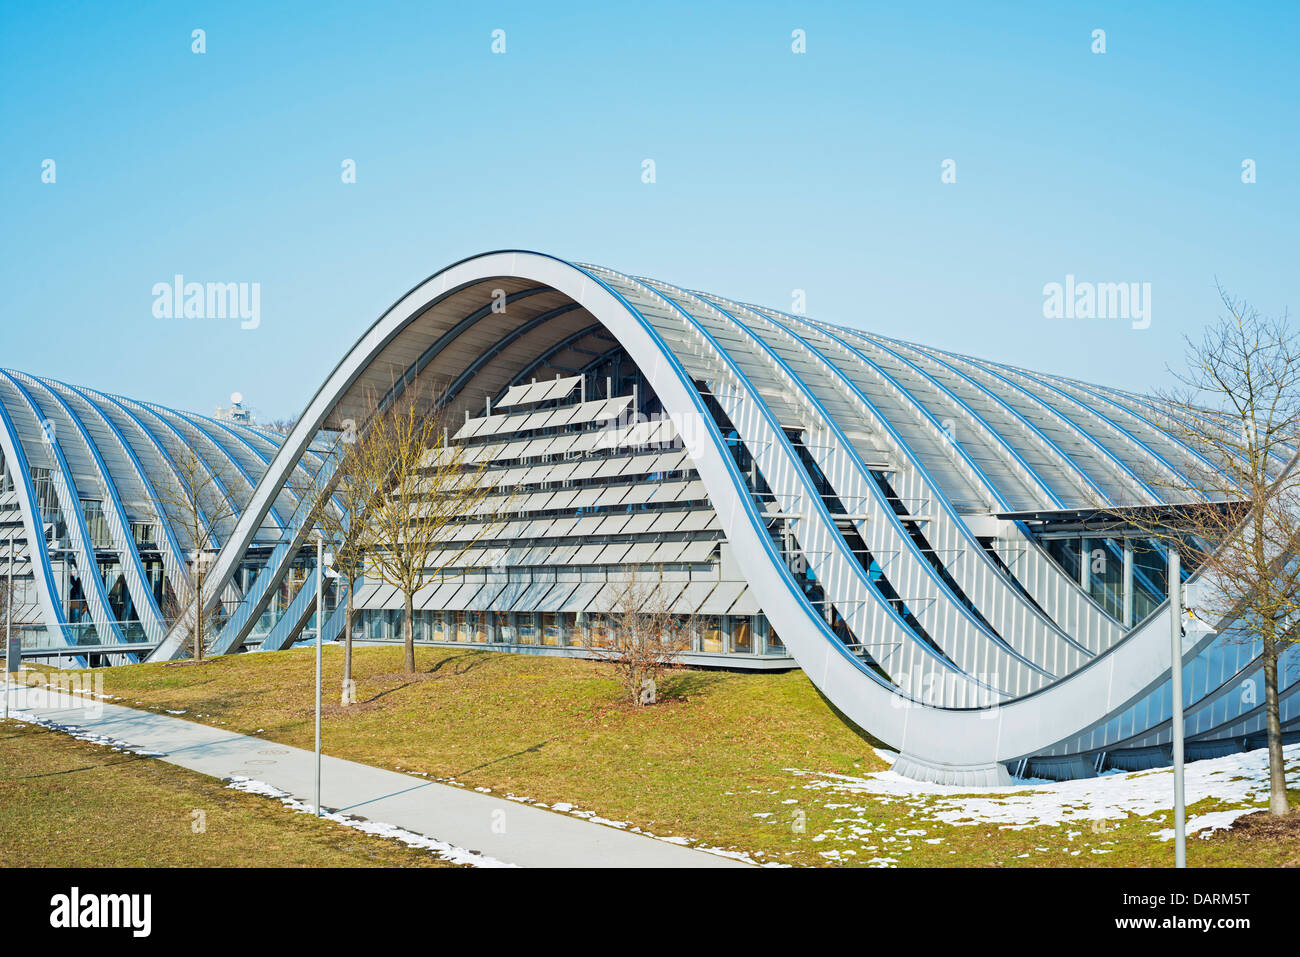 Europe, Switzerland, Bern, Swiss capital city, Zentrum Paul Klee, modern art museum, designed by Renzo Piano Stock Photo